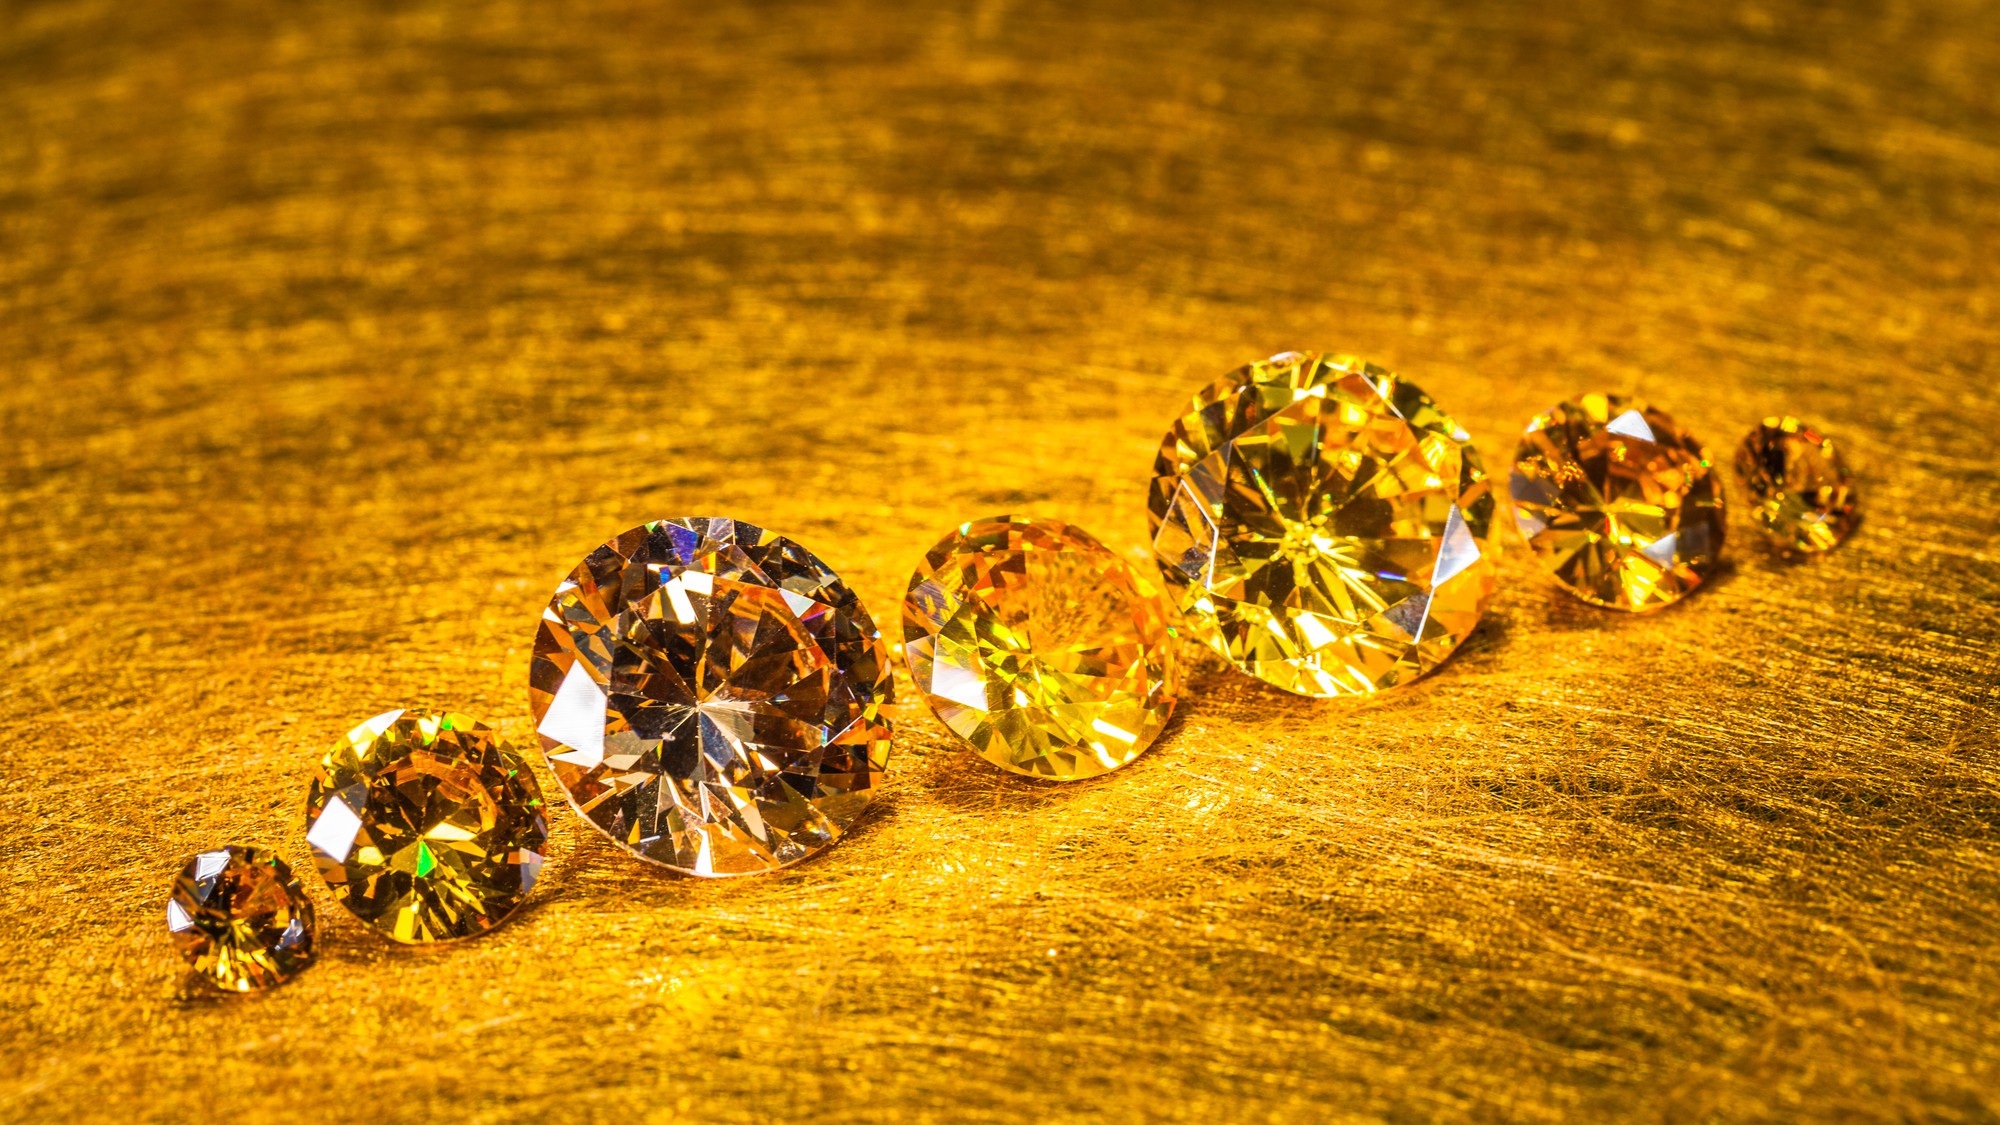 ダイヤモンド業者の取引基準 ラパポート価格 とは 富裕層向け資産防衛メディア 幻冬舎ゴールドオンライン